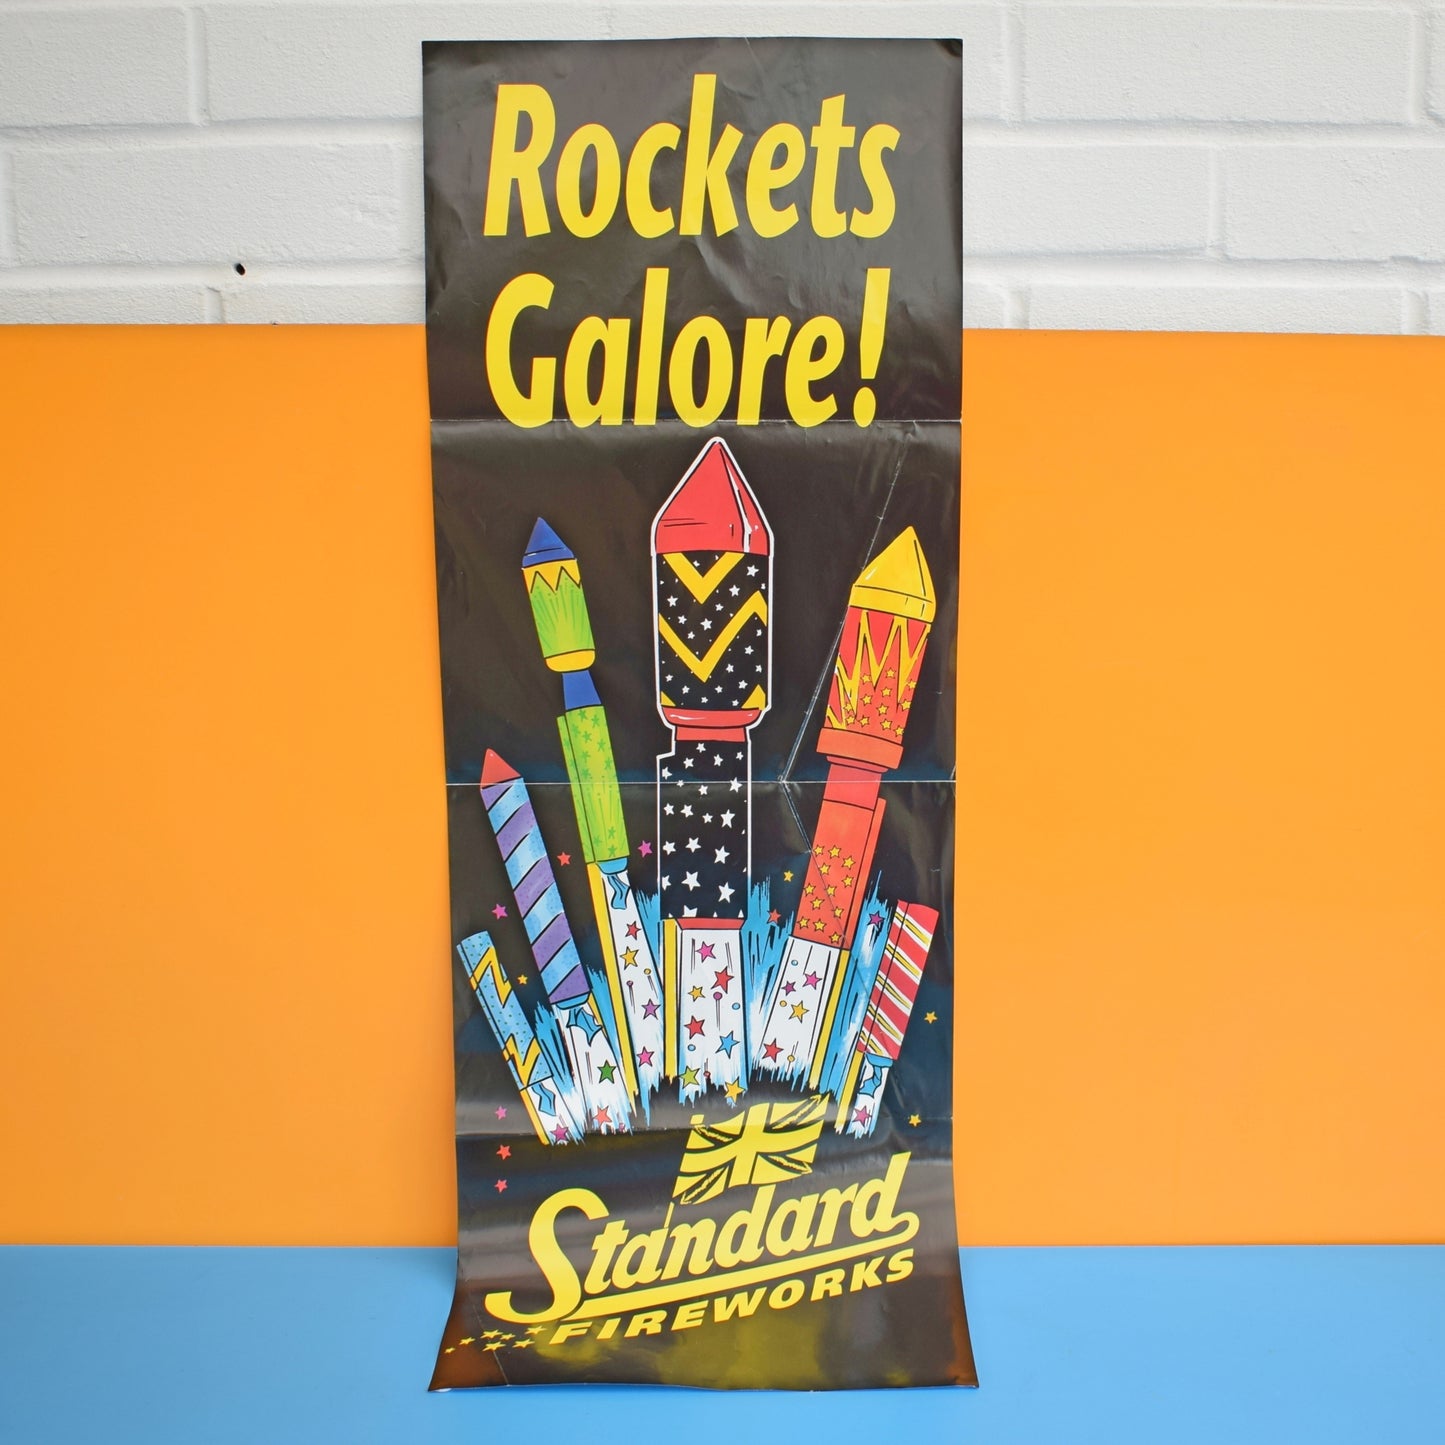 Vintage 1990s Fireworks Poster- Standard Fireworks